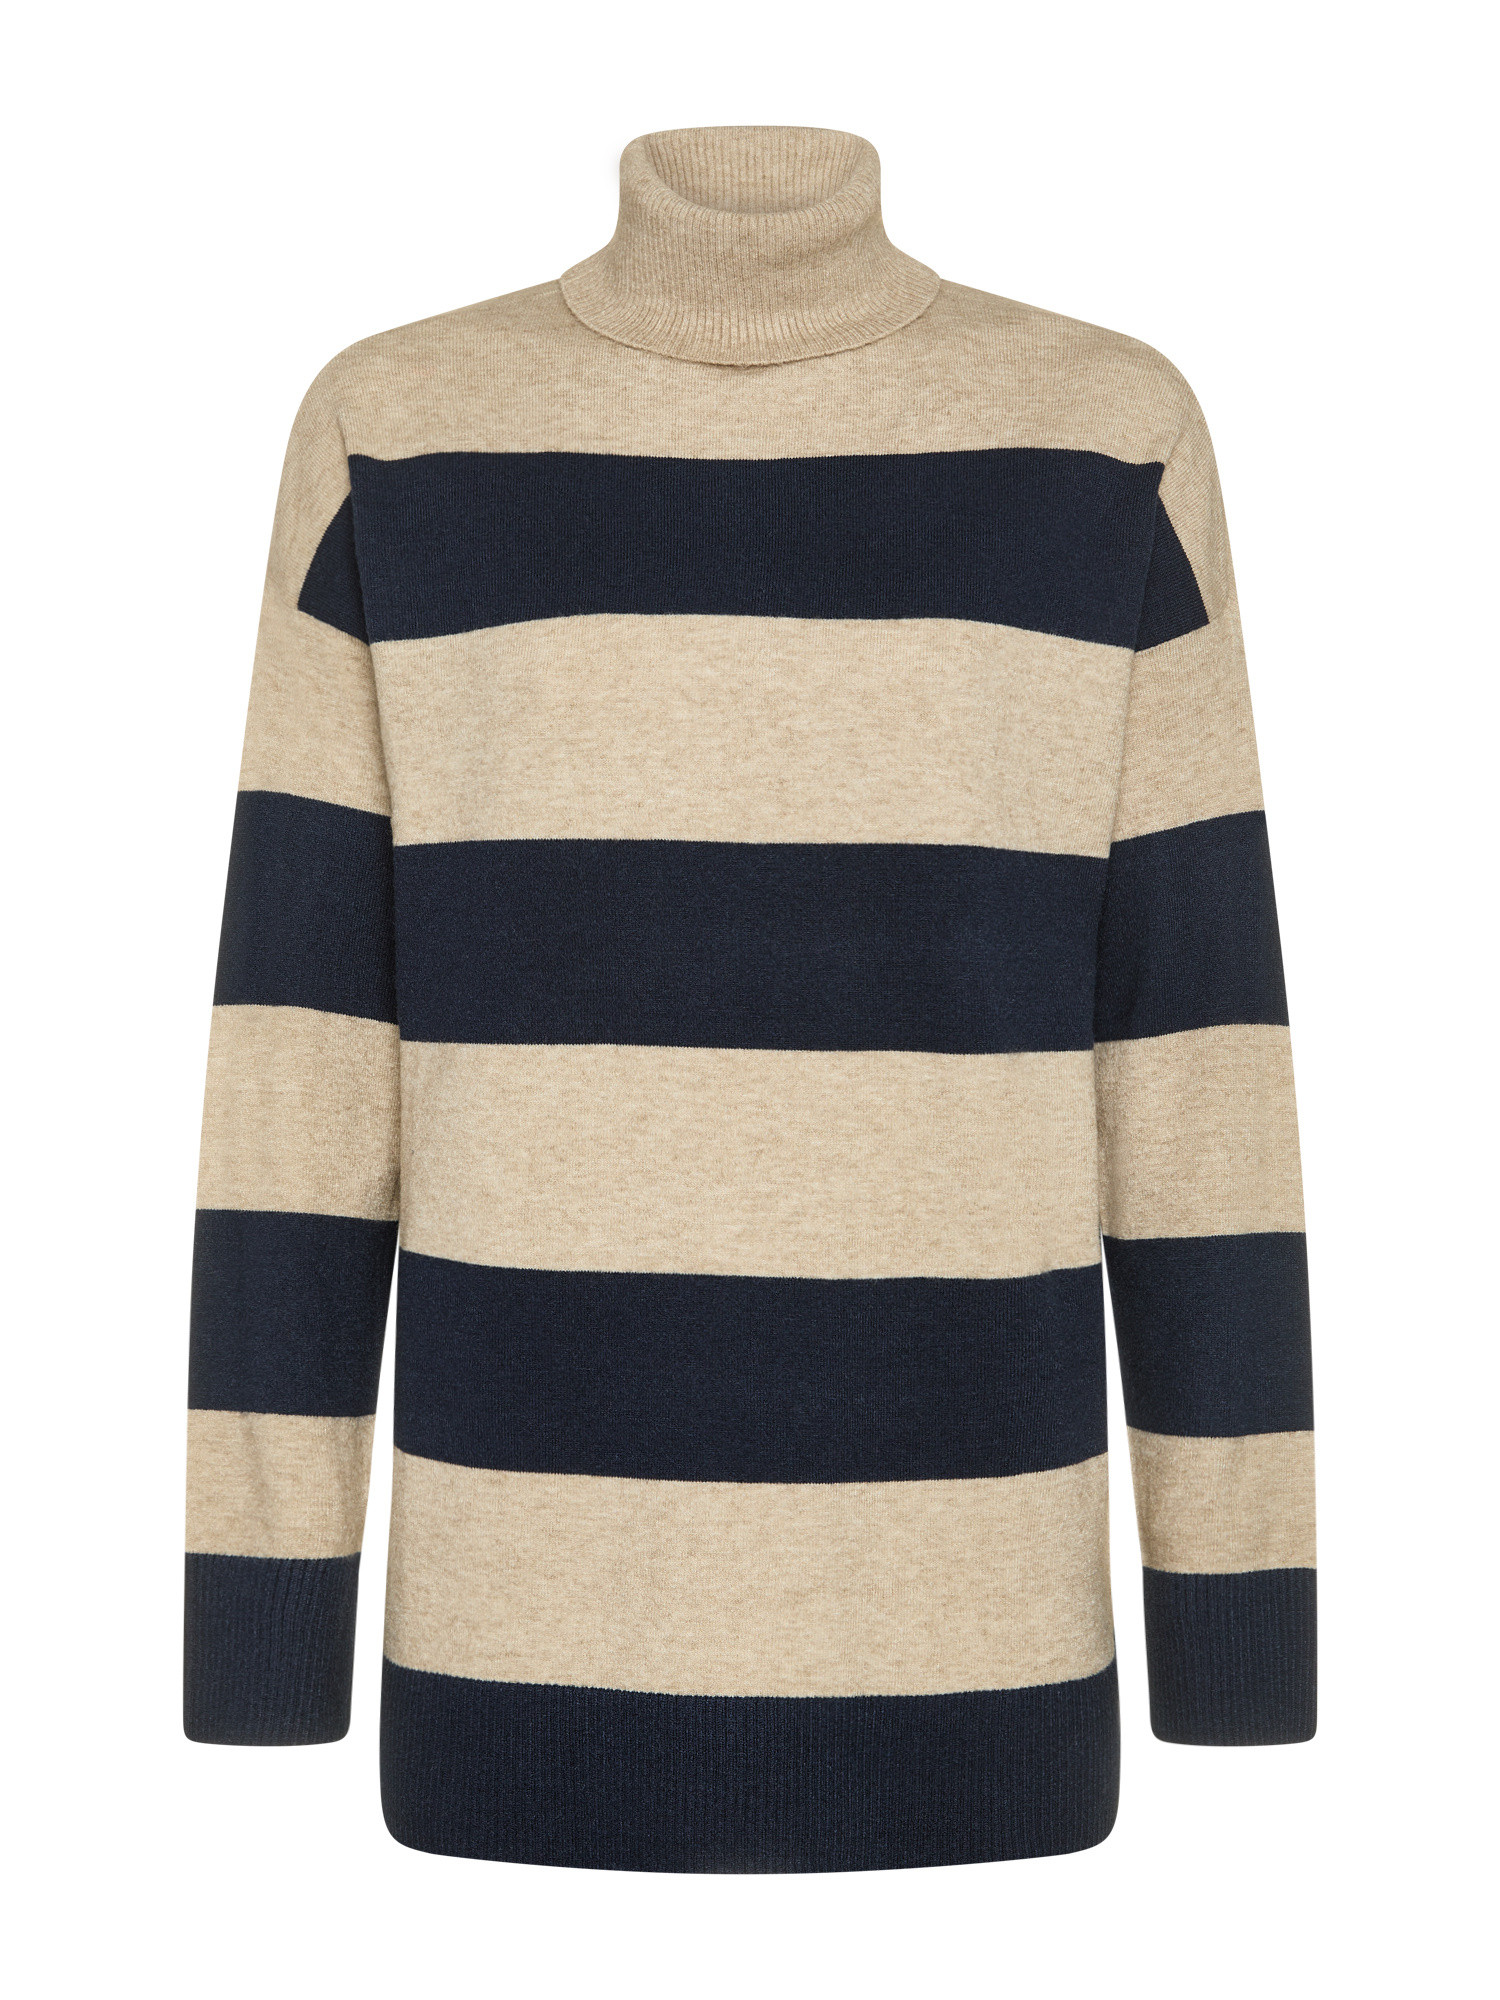 Only - Striped knit turtleneck, Light Beige, large image number 0